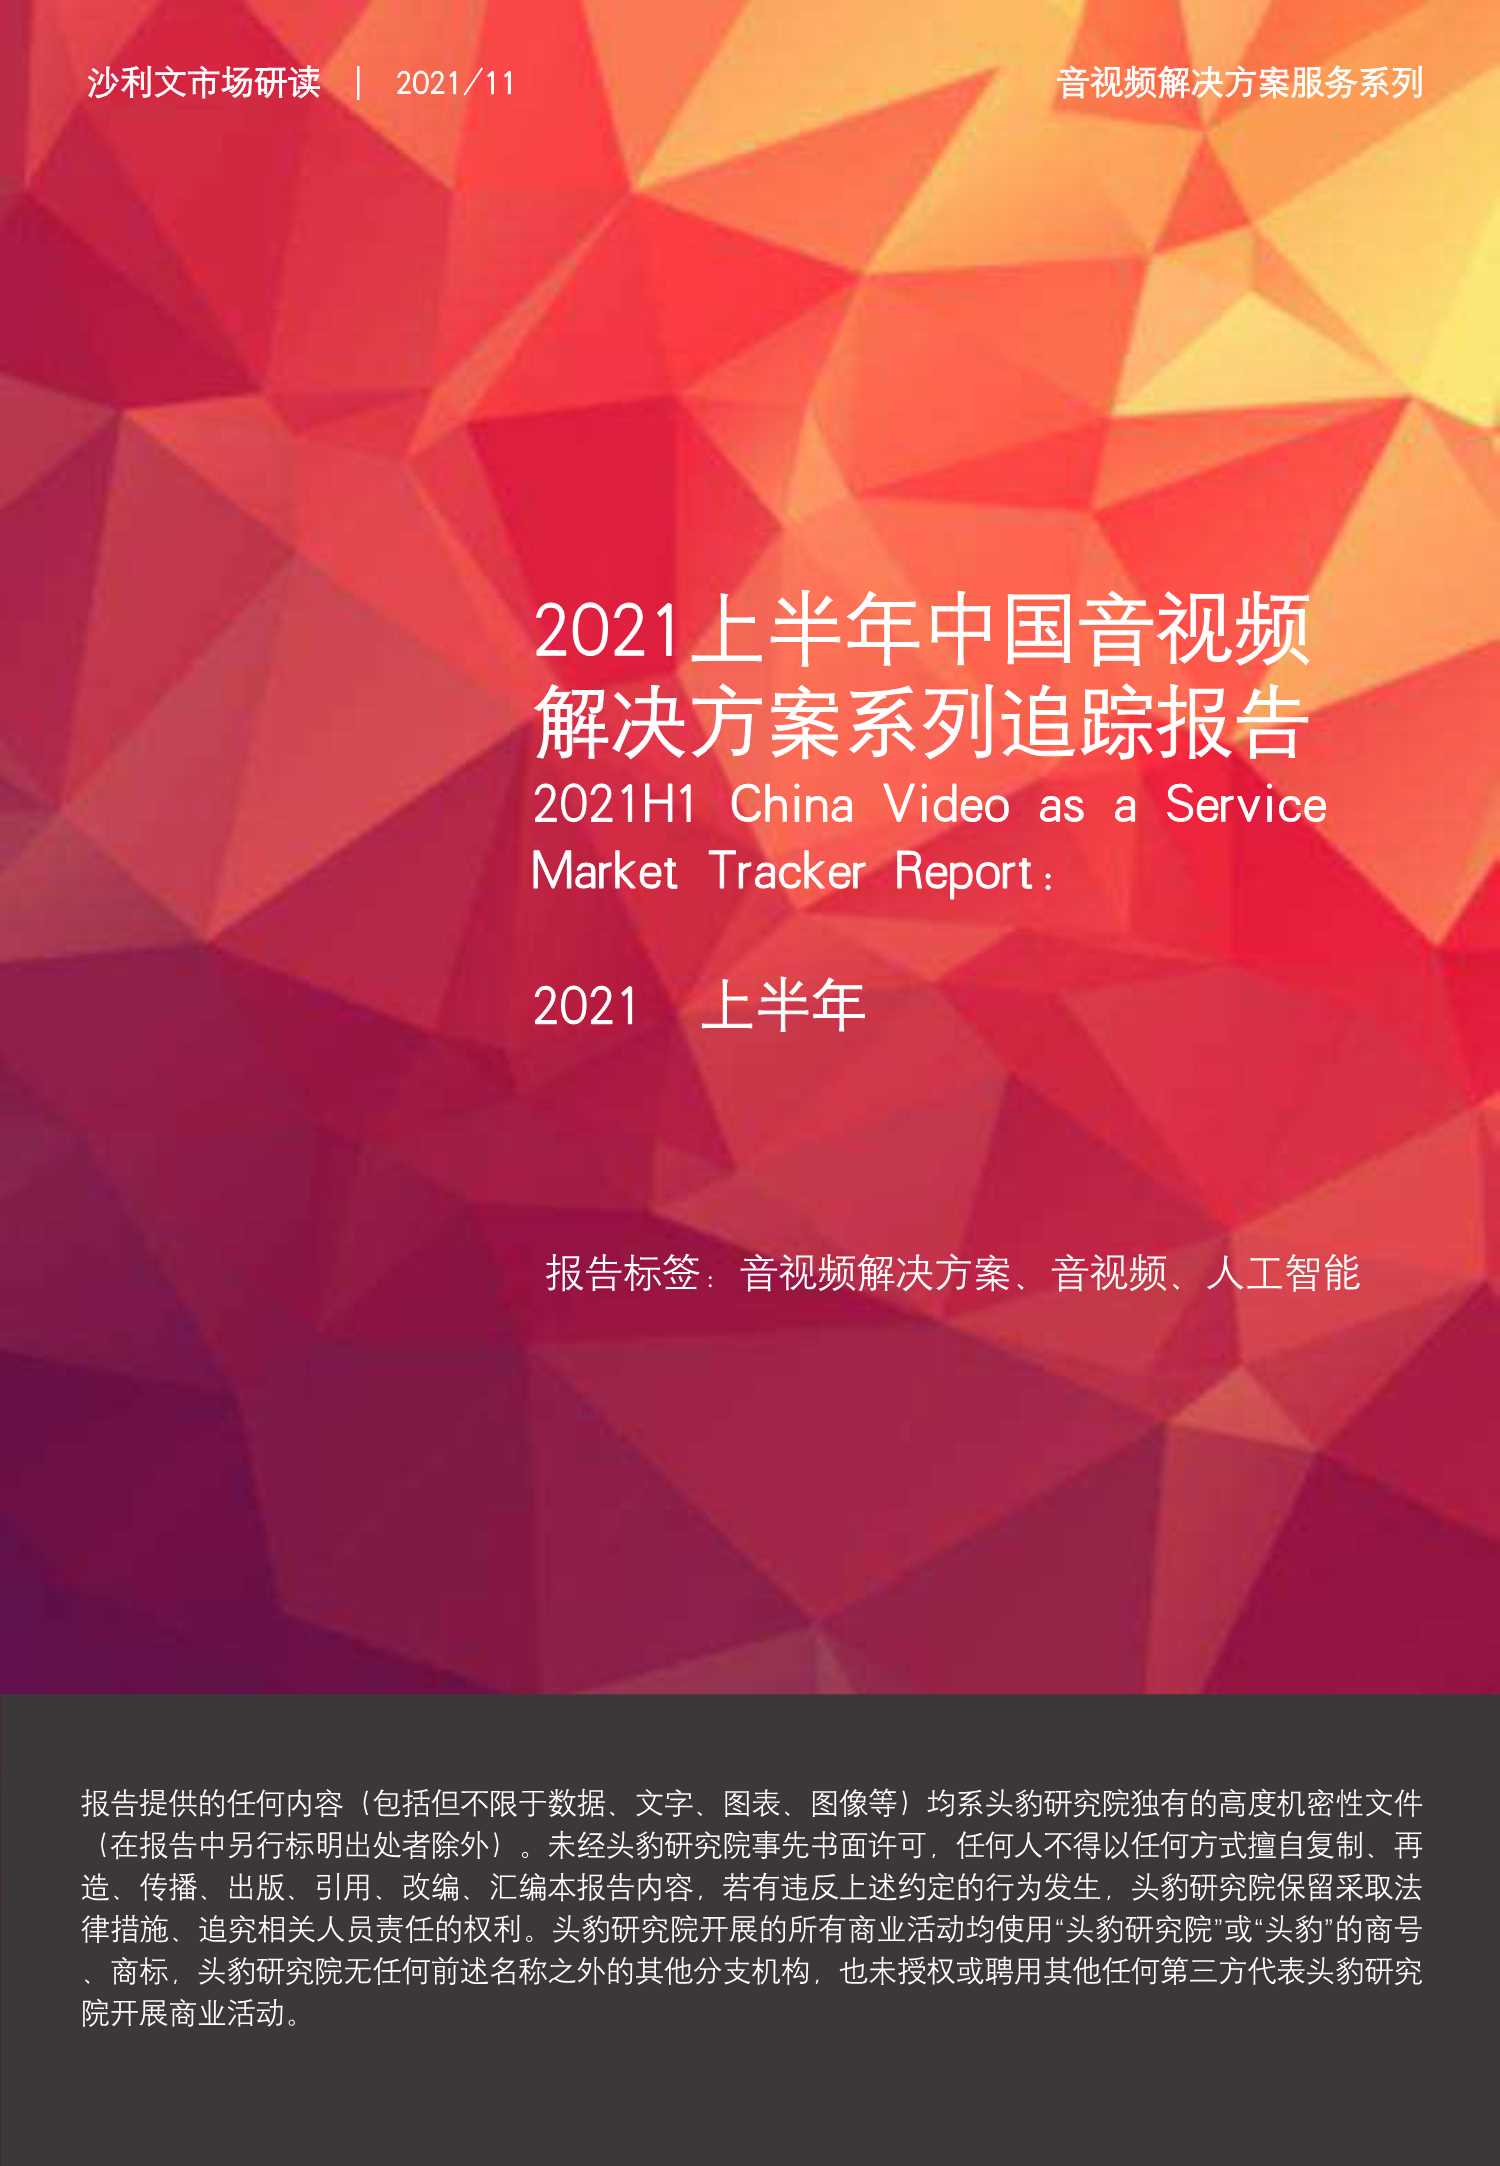 2021上半年中国音视频解决方案系列追踪报告-2021.12-25页